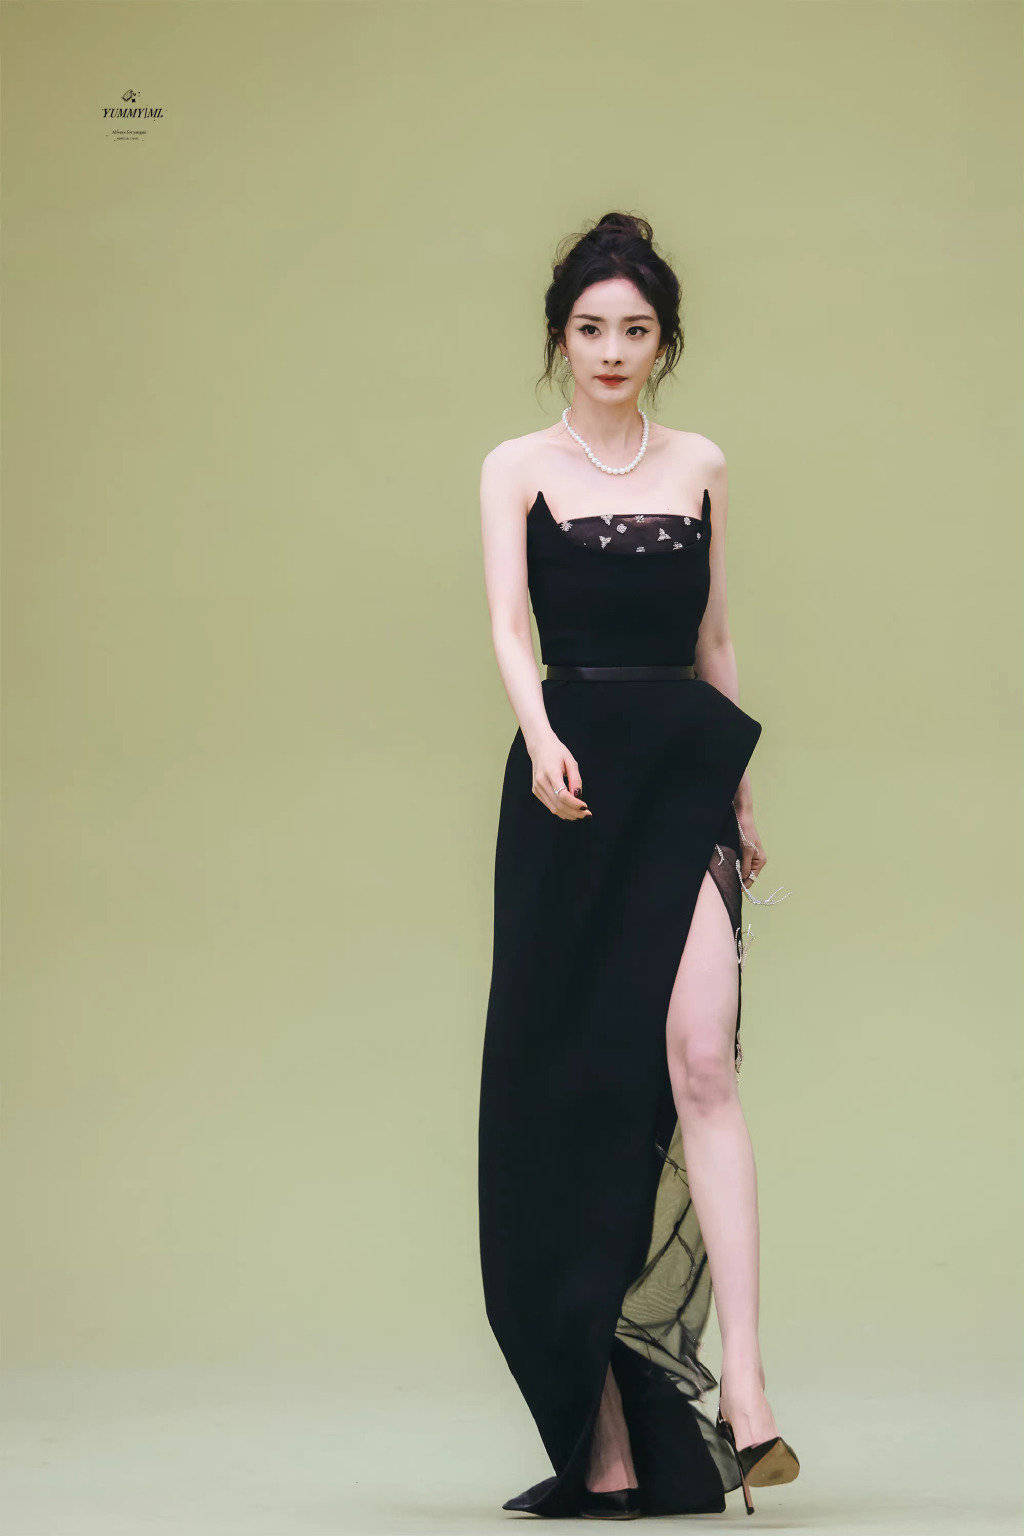 杨幂发型变黑长直显温婉大气 星空短裙秀好身材 - 国际在线移动版